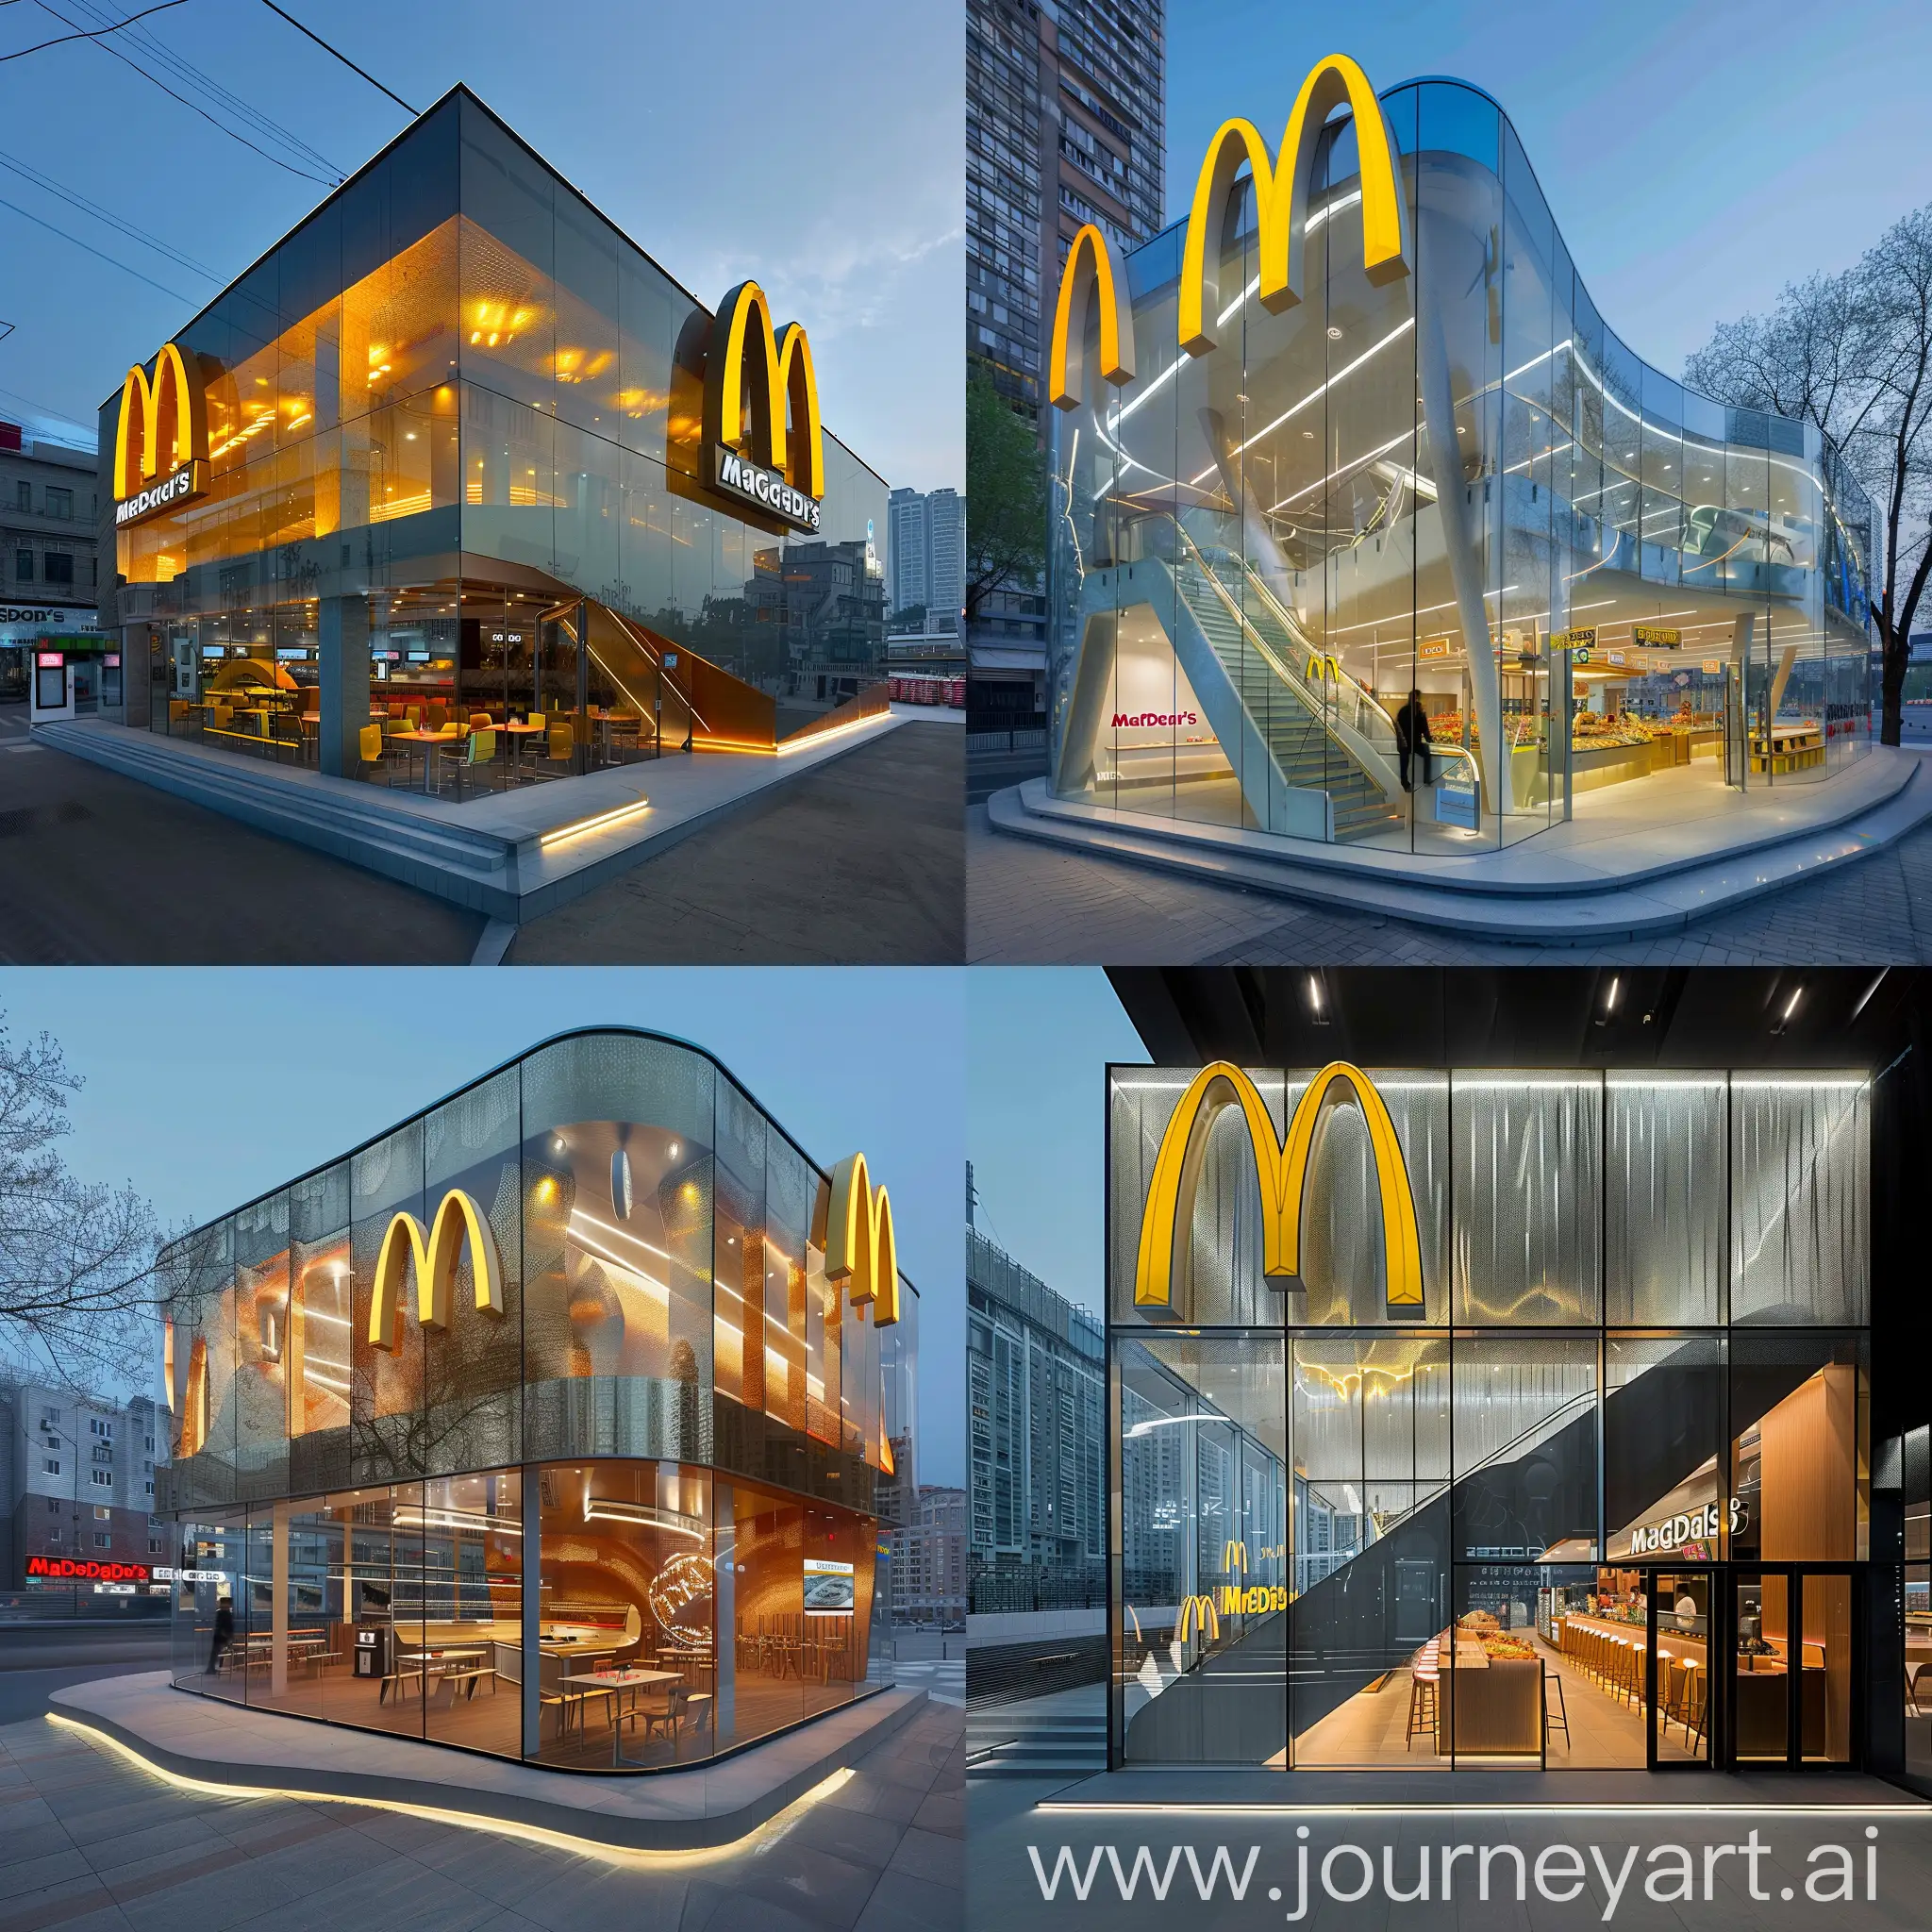 Futuristic-McDonalds-Restaurant-Design-Concept